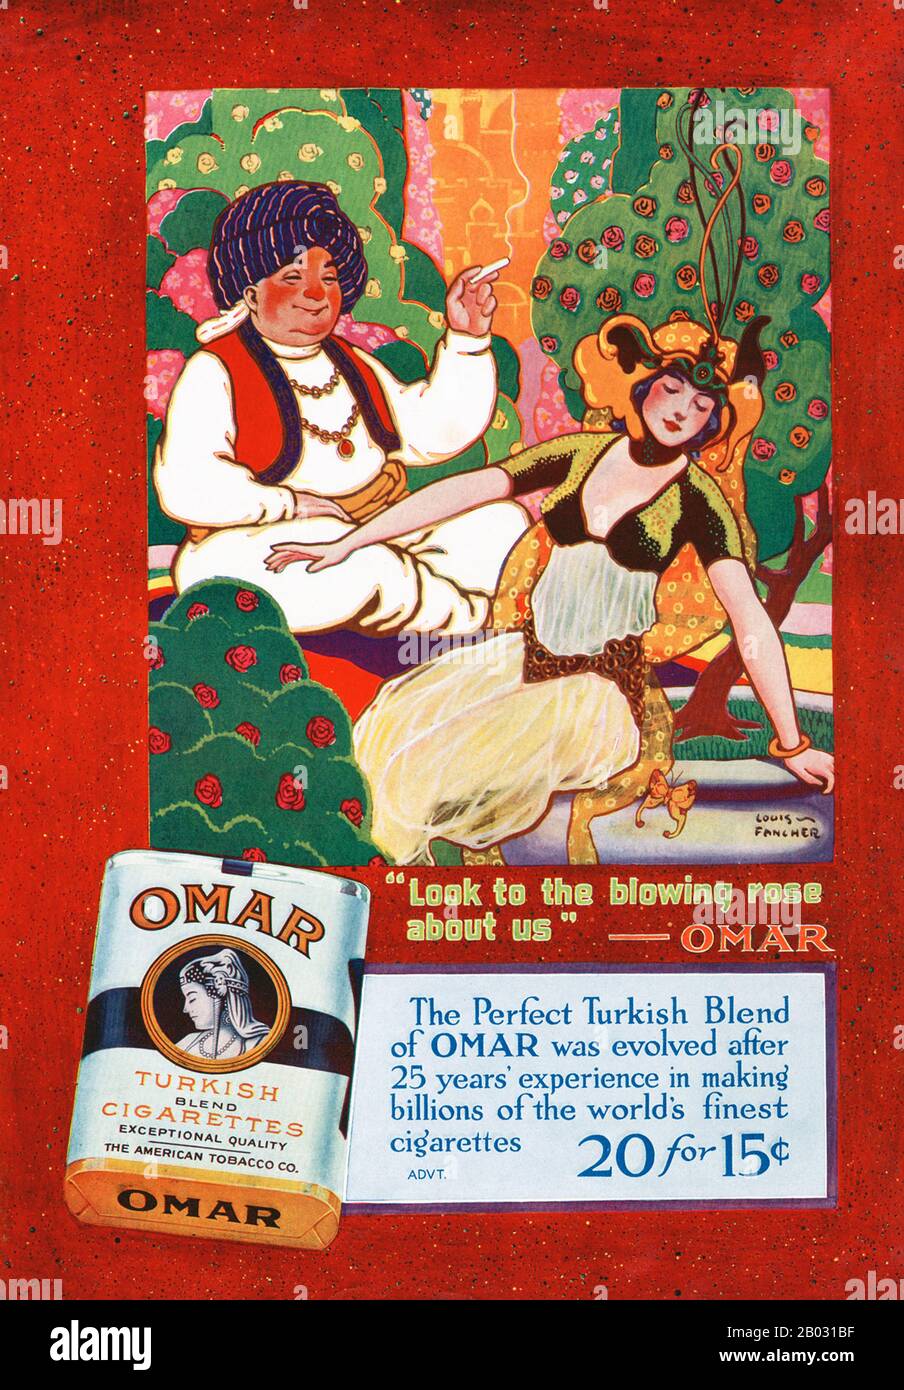 Au début des années 1900, les fabricants de cigarettes turques et égyptiennes ont triplé leurs ventes et sont devenus des concurrents légitimes des grandes marques. En 1911, l'American Tobacco Company a introduit Omar, une cigarette turque de qualité supérieure, afin de concurrencer d'autres grandes marques turques comme Murad. La cigarette a été nommée d'après le poète perse médiéval Omar Khayyam, qui a connu une résurgence de popularité de 1900 à 1930. Les publicités pour Omar cigarettes ont fait référence au célèbre poème de Khayyam, le Rubaiyat , et ont porté sur des thèmes de plaisir, de loisirs et de luxe. Banque D'Images